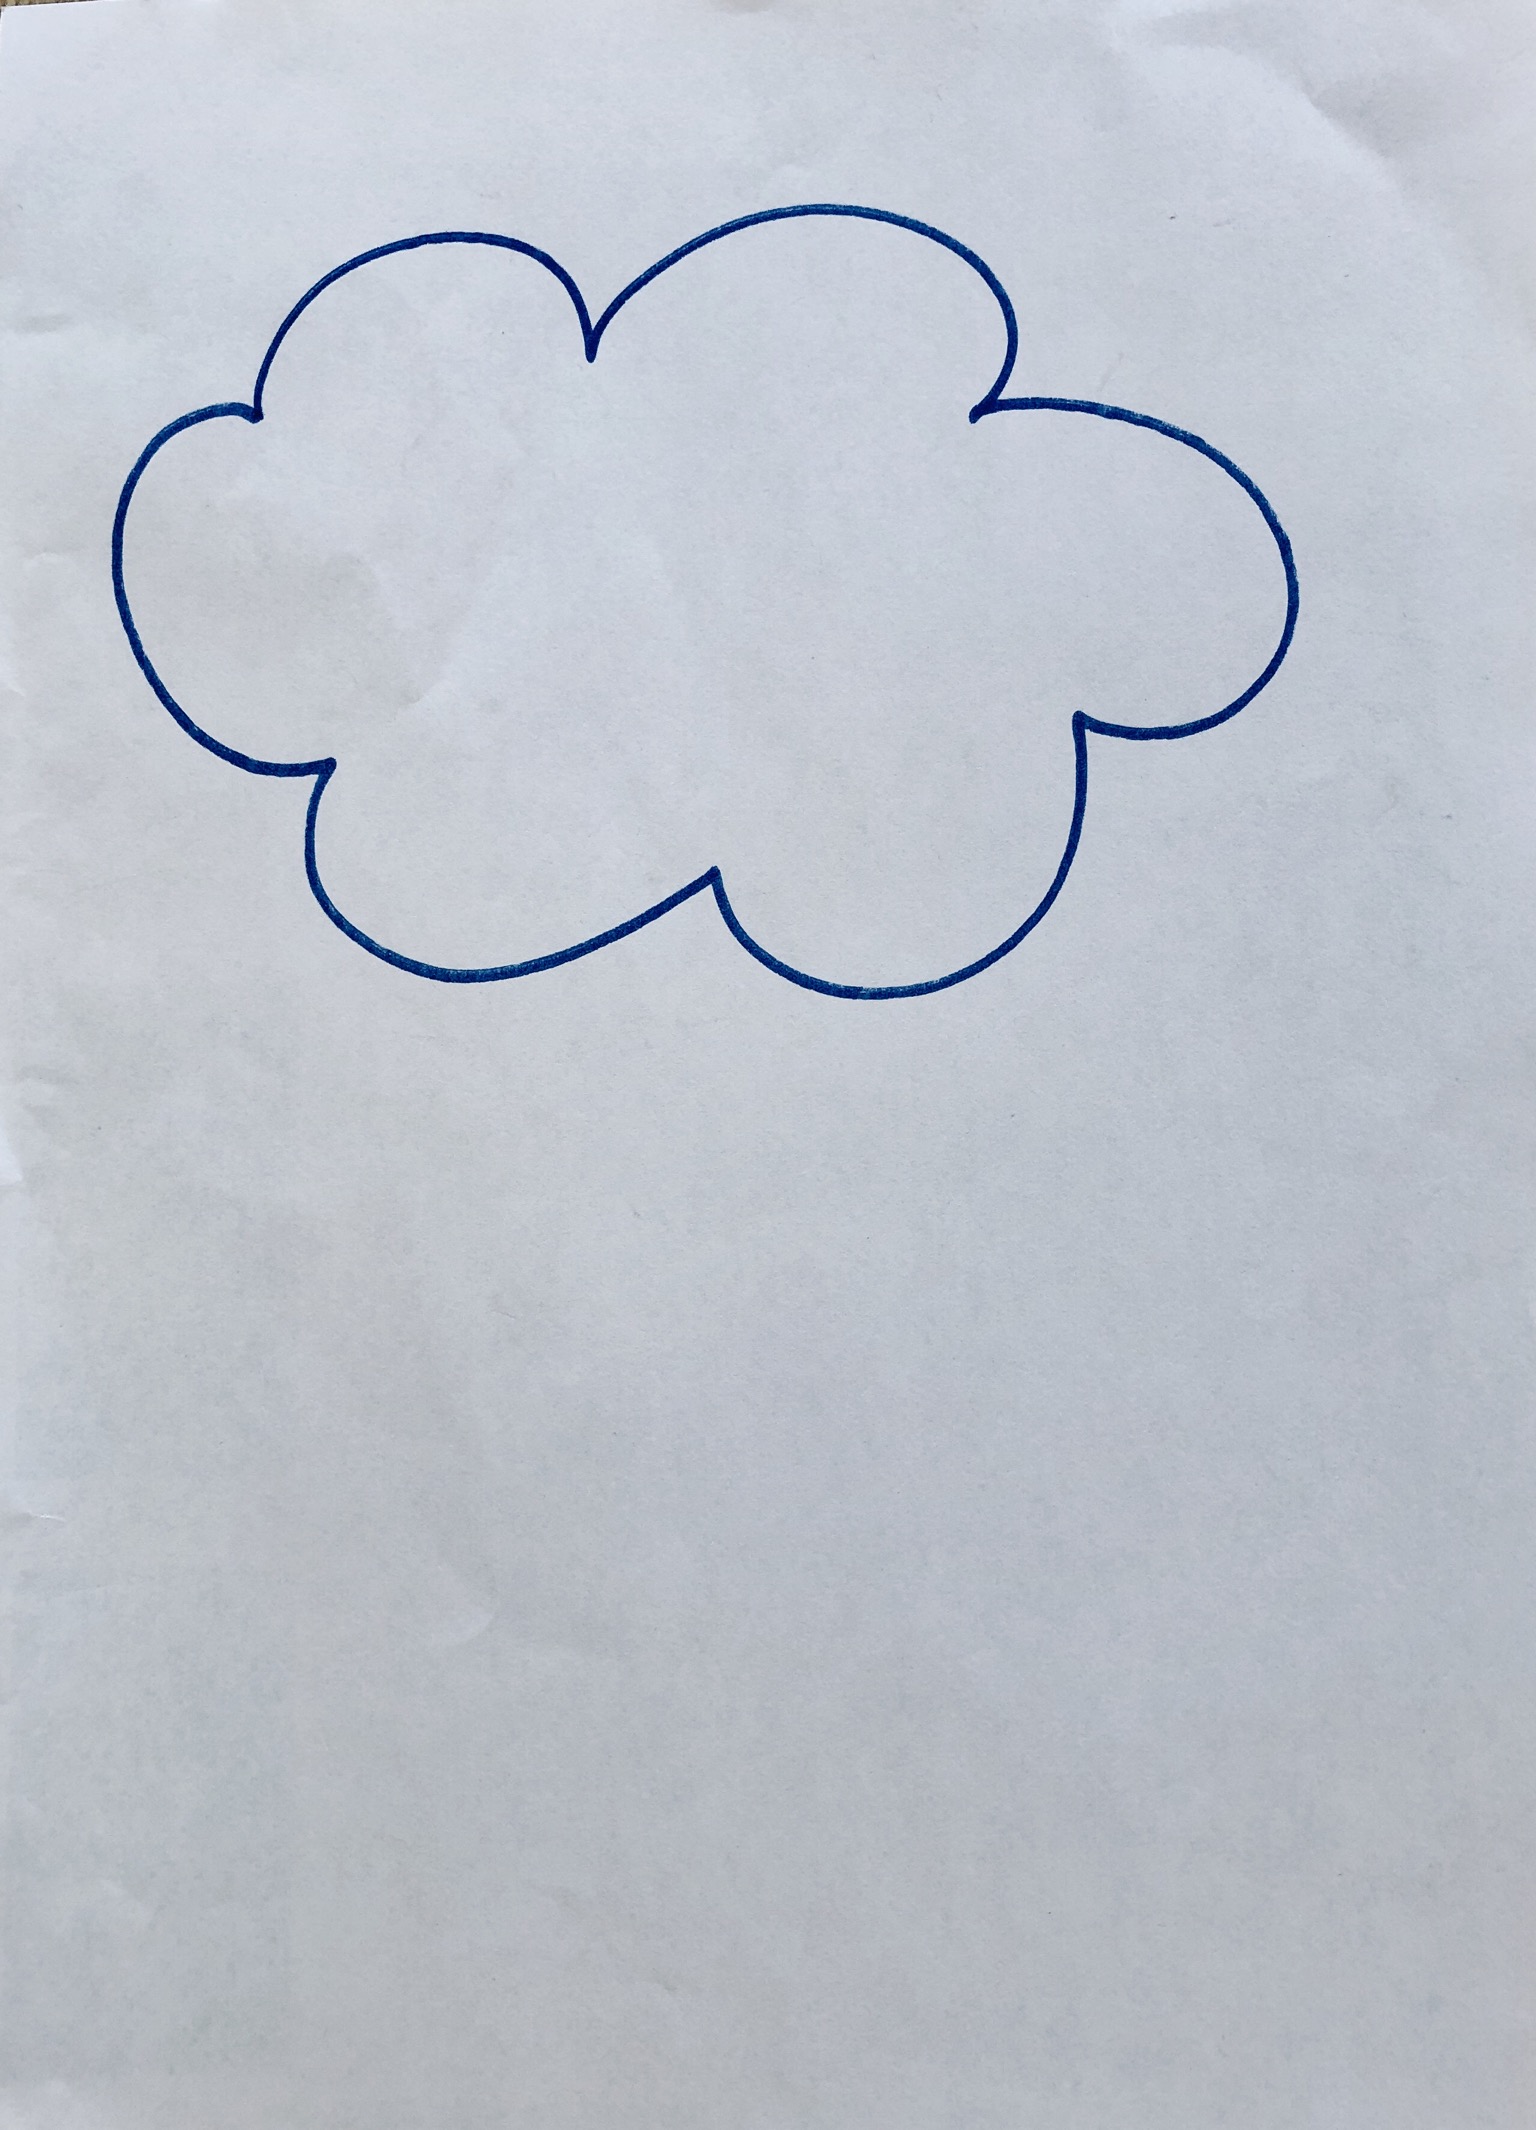 Bild zum Schritt 1 für die Kinder-Beschäftigung: 'Eine Wolke aufmalen'